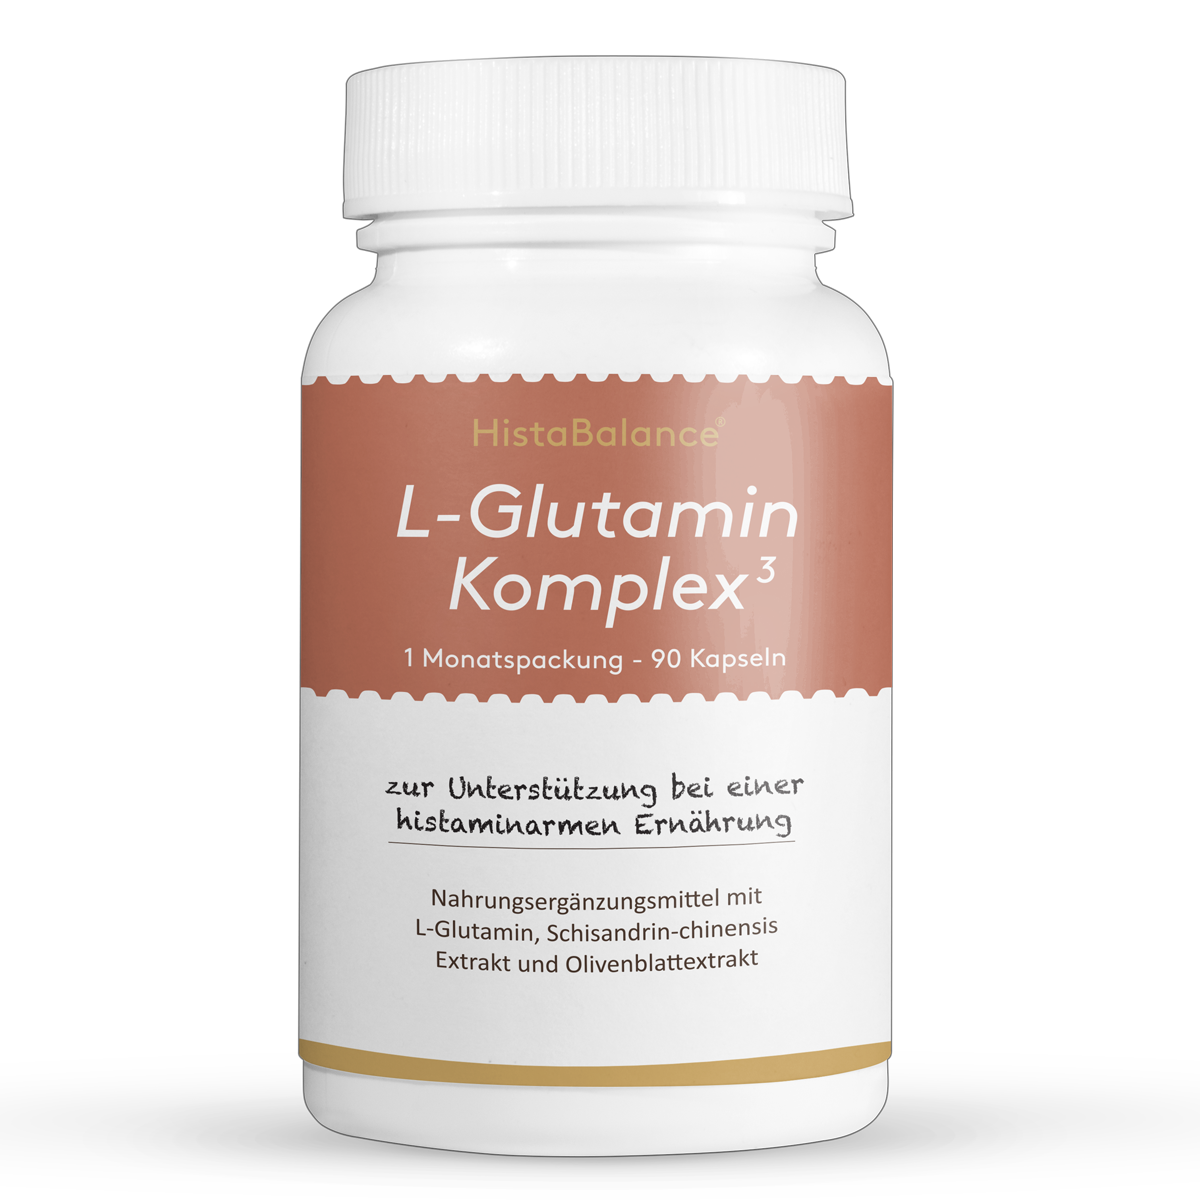 L-Glutamin Komplex³